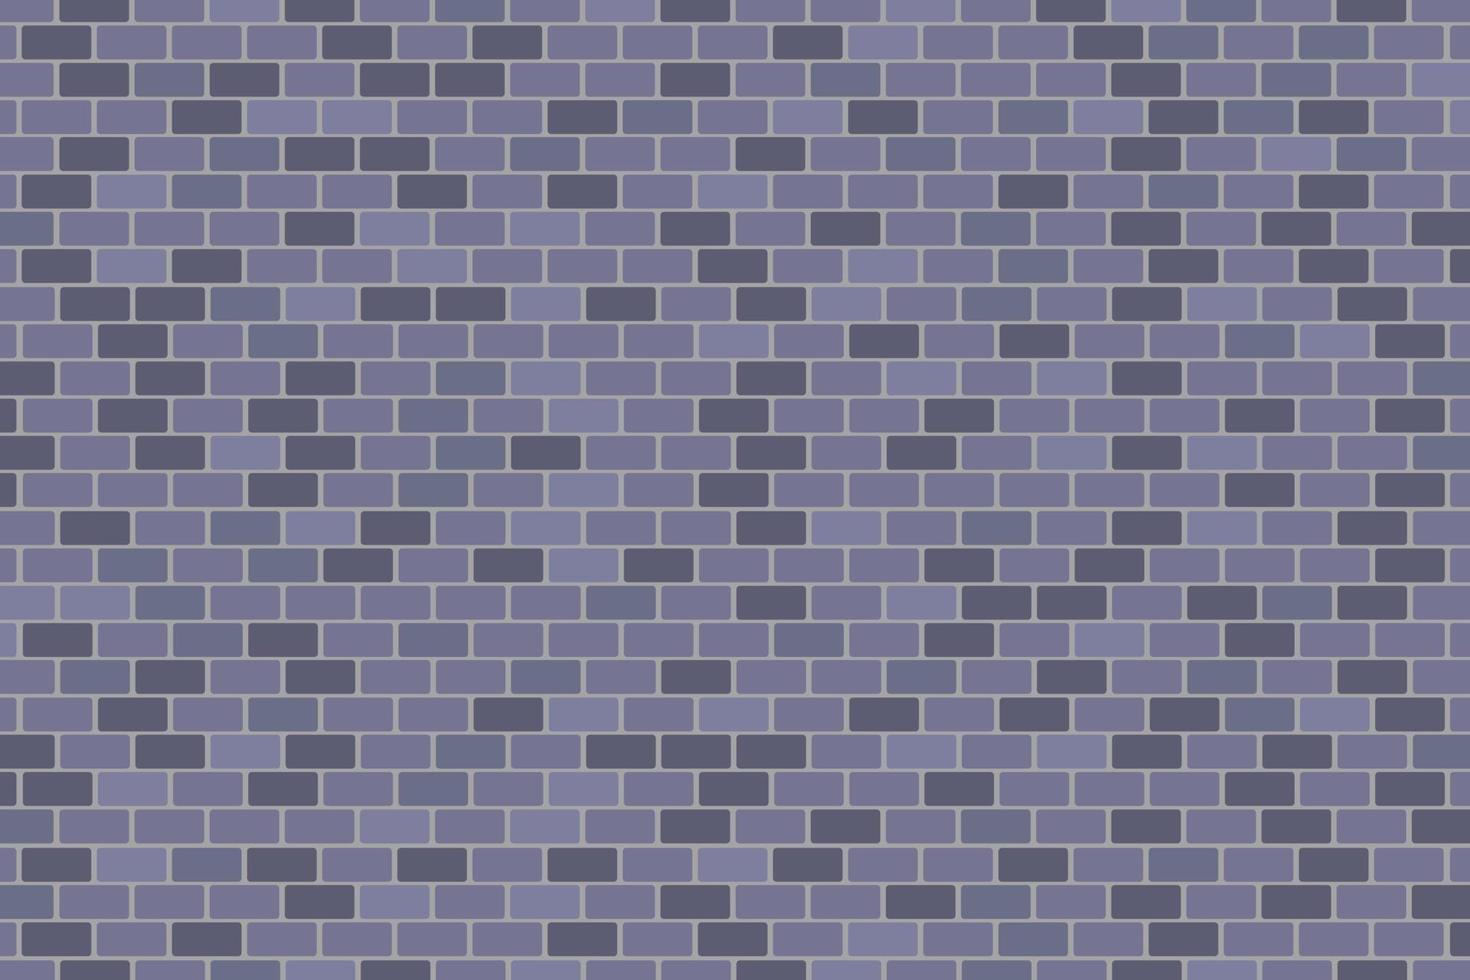 Backsteinmauer graue oder graue Beschaffenheitshintergrundtapete mit brauner Farbvektorillustration vektor